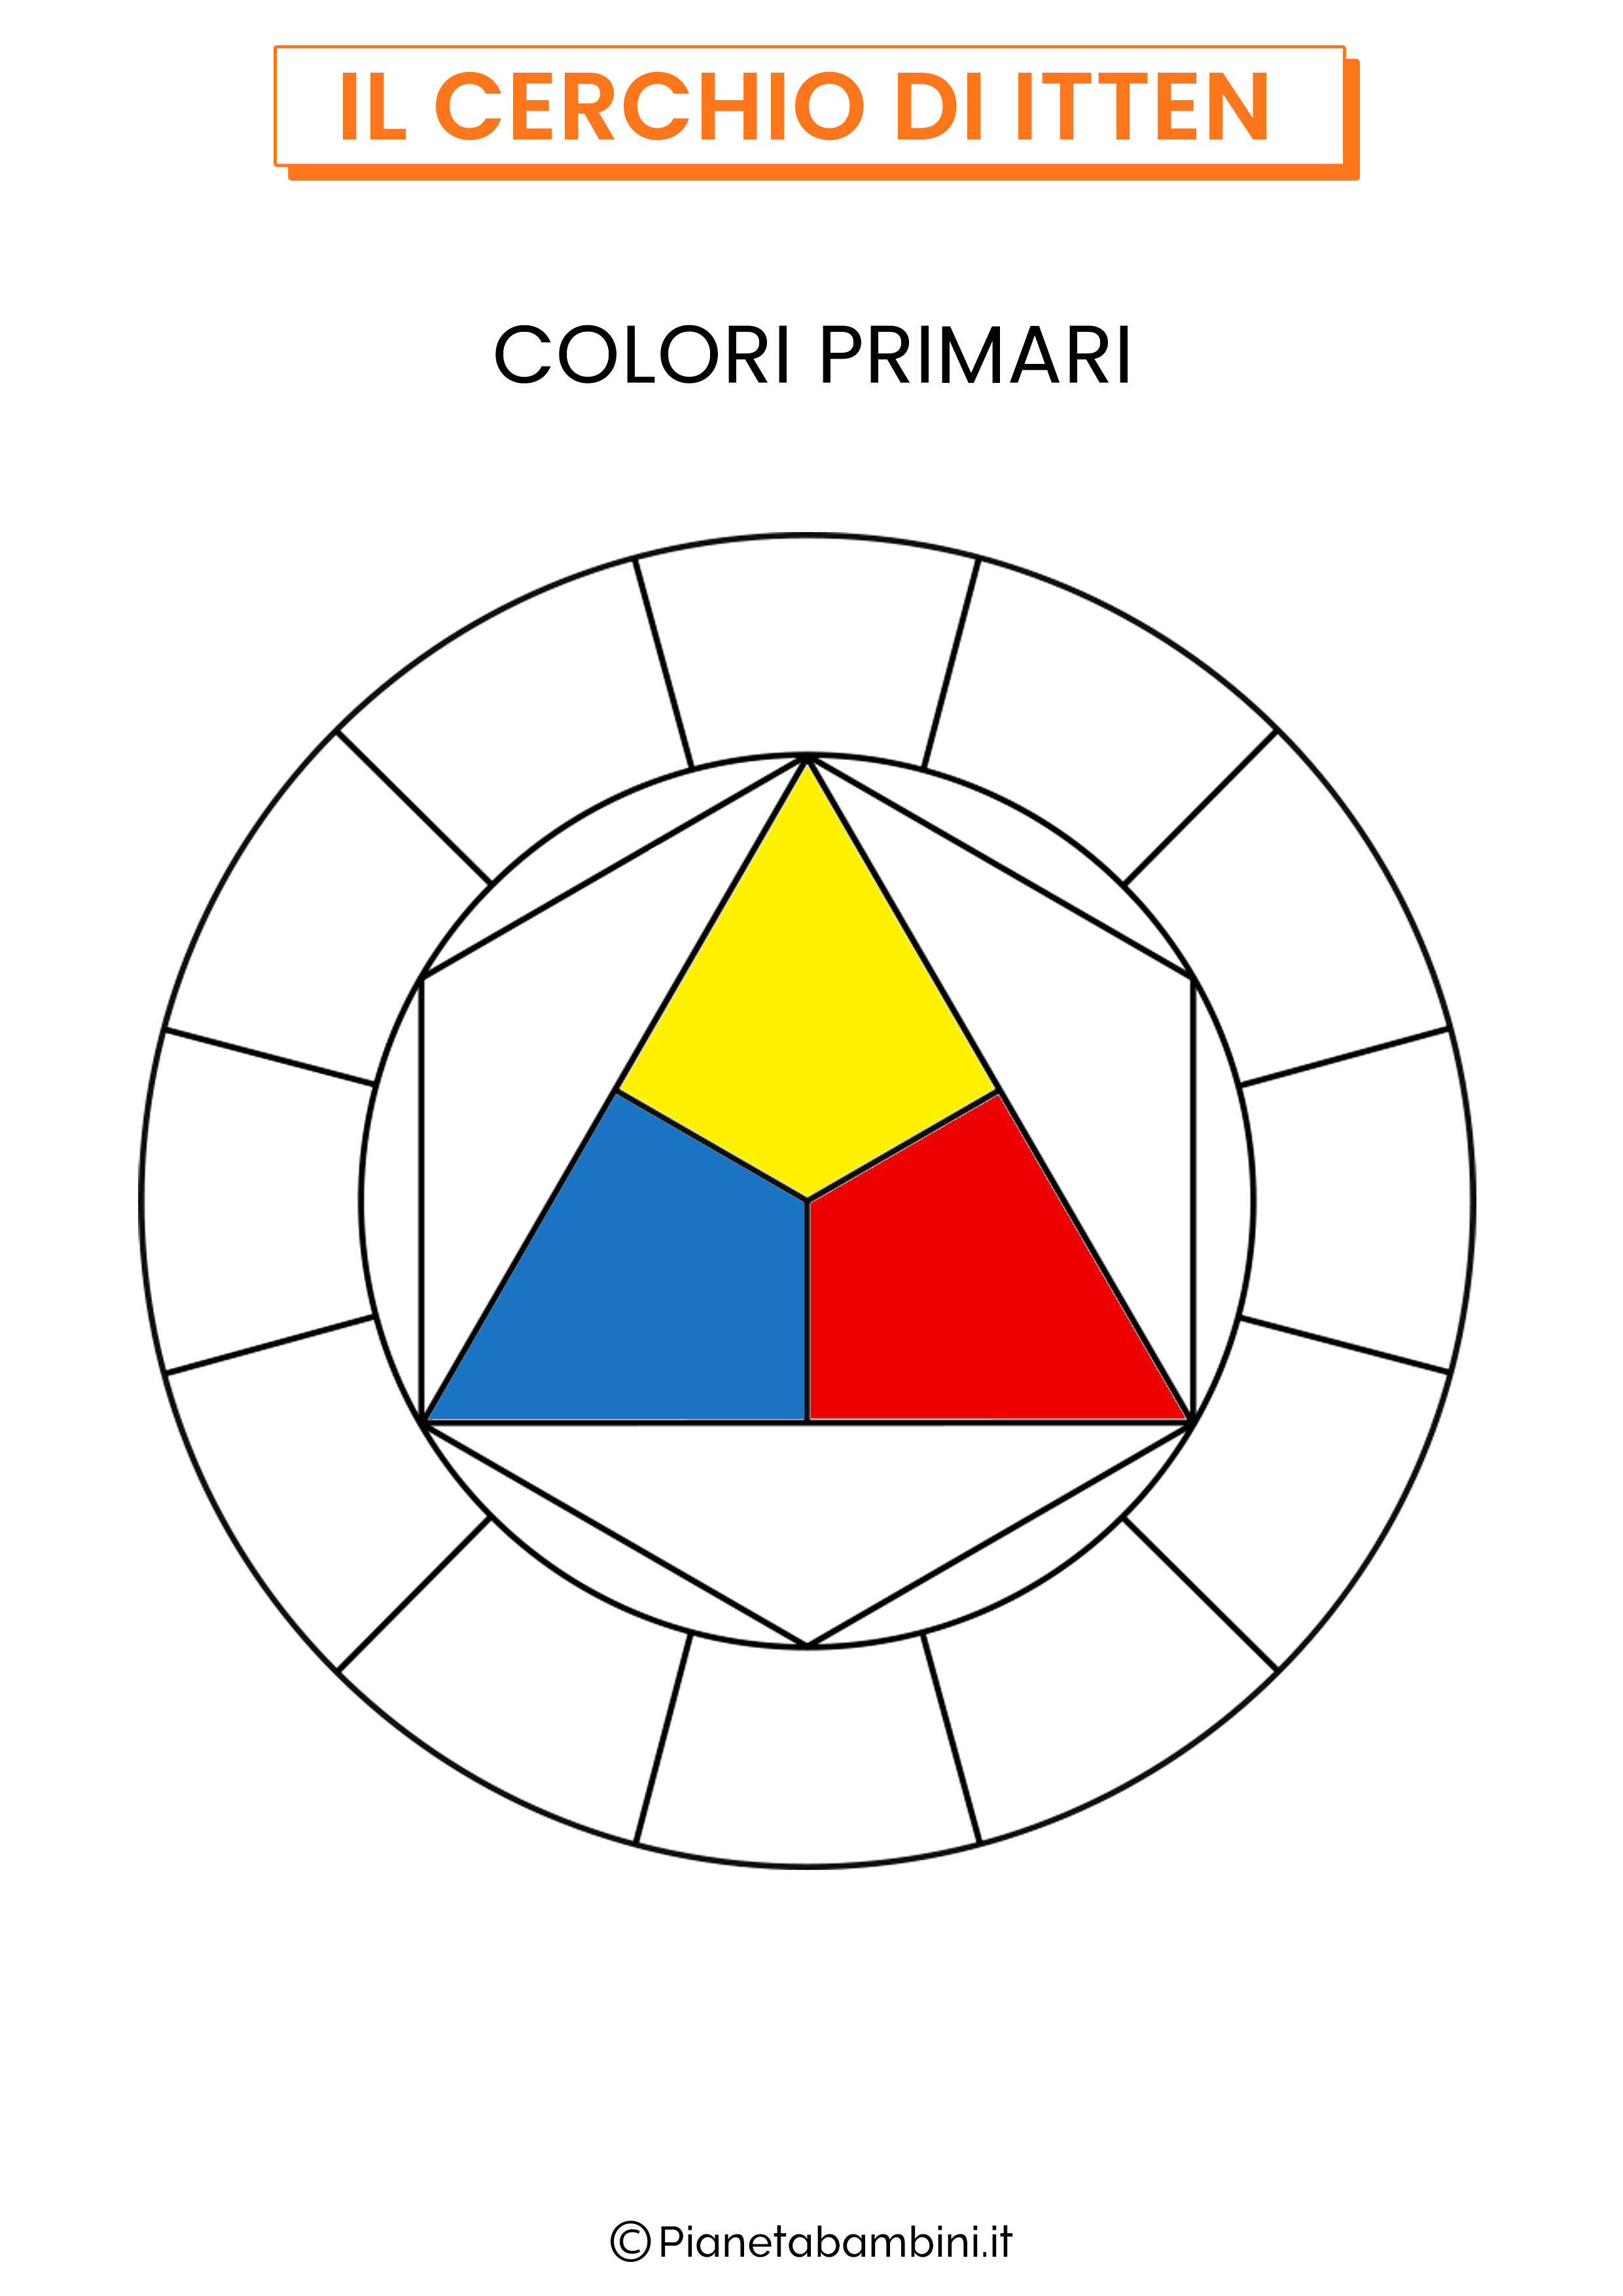 Cerchio dei colori di Itten colori primari